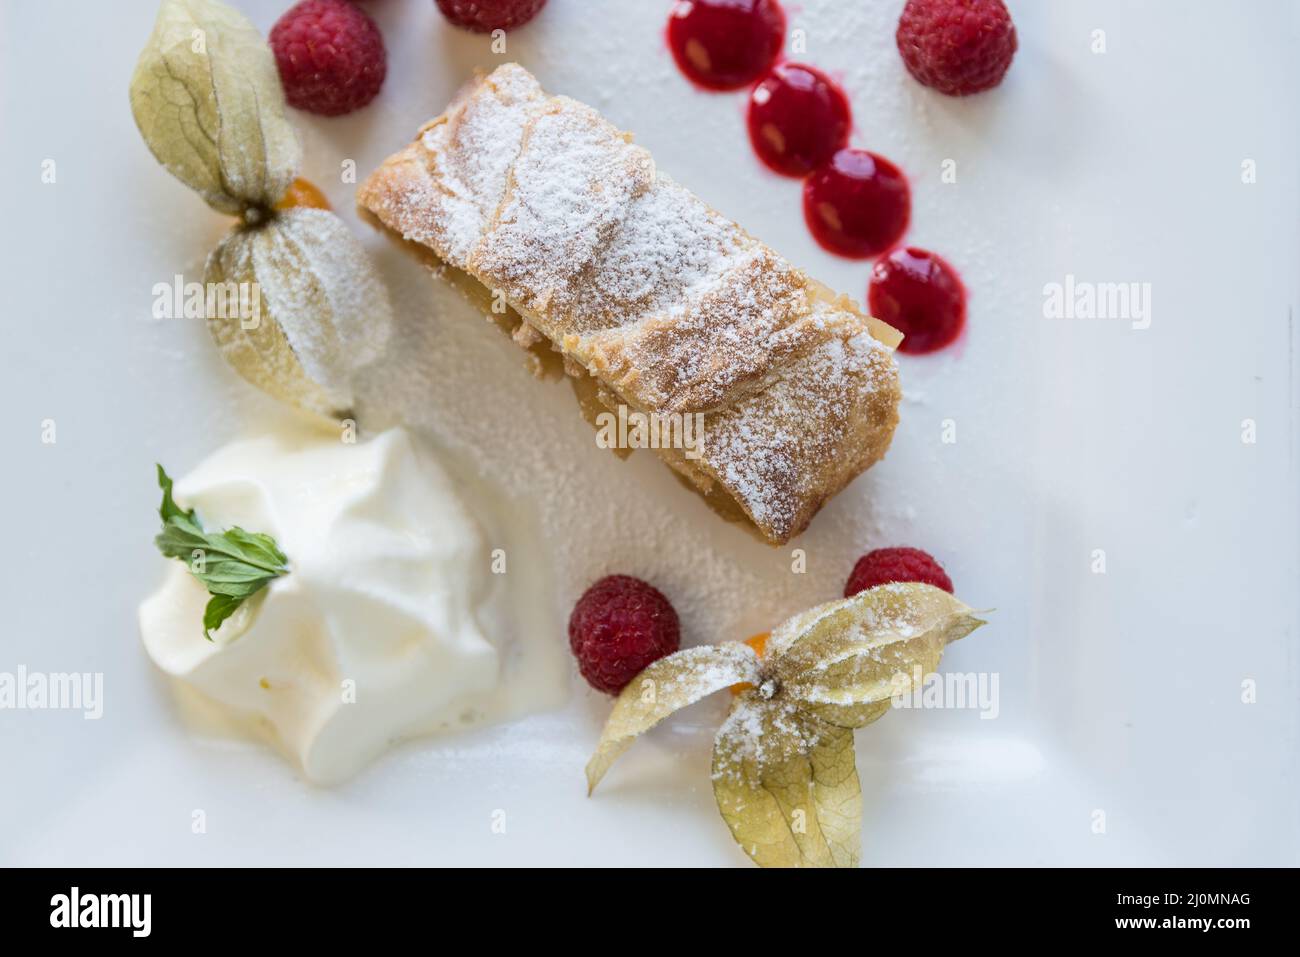 Strudel de manzana - delicioso pastel de fruta con frutas y nata montada Foto de stock